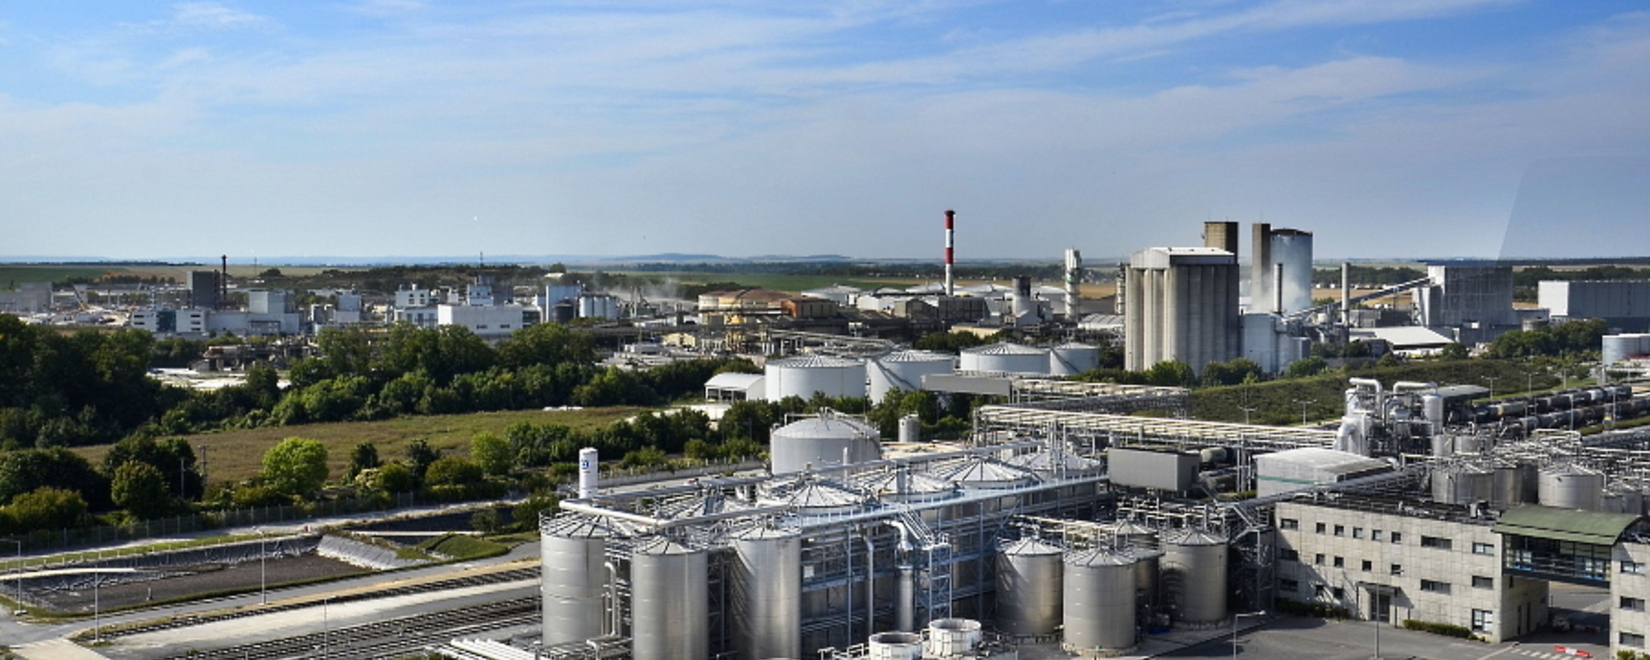 Один из крупнейших сахарных заводов Тамбовской области планирует поставлять продукцию в Китай